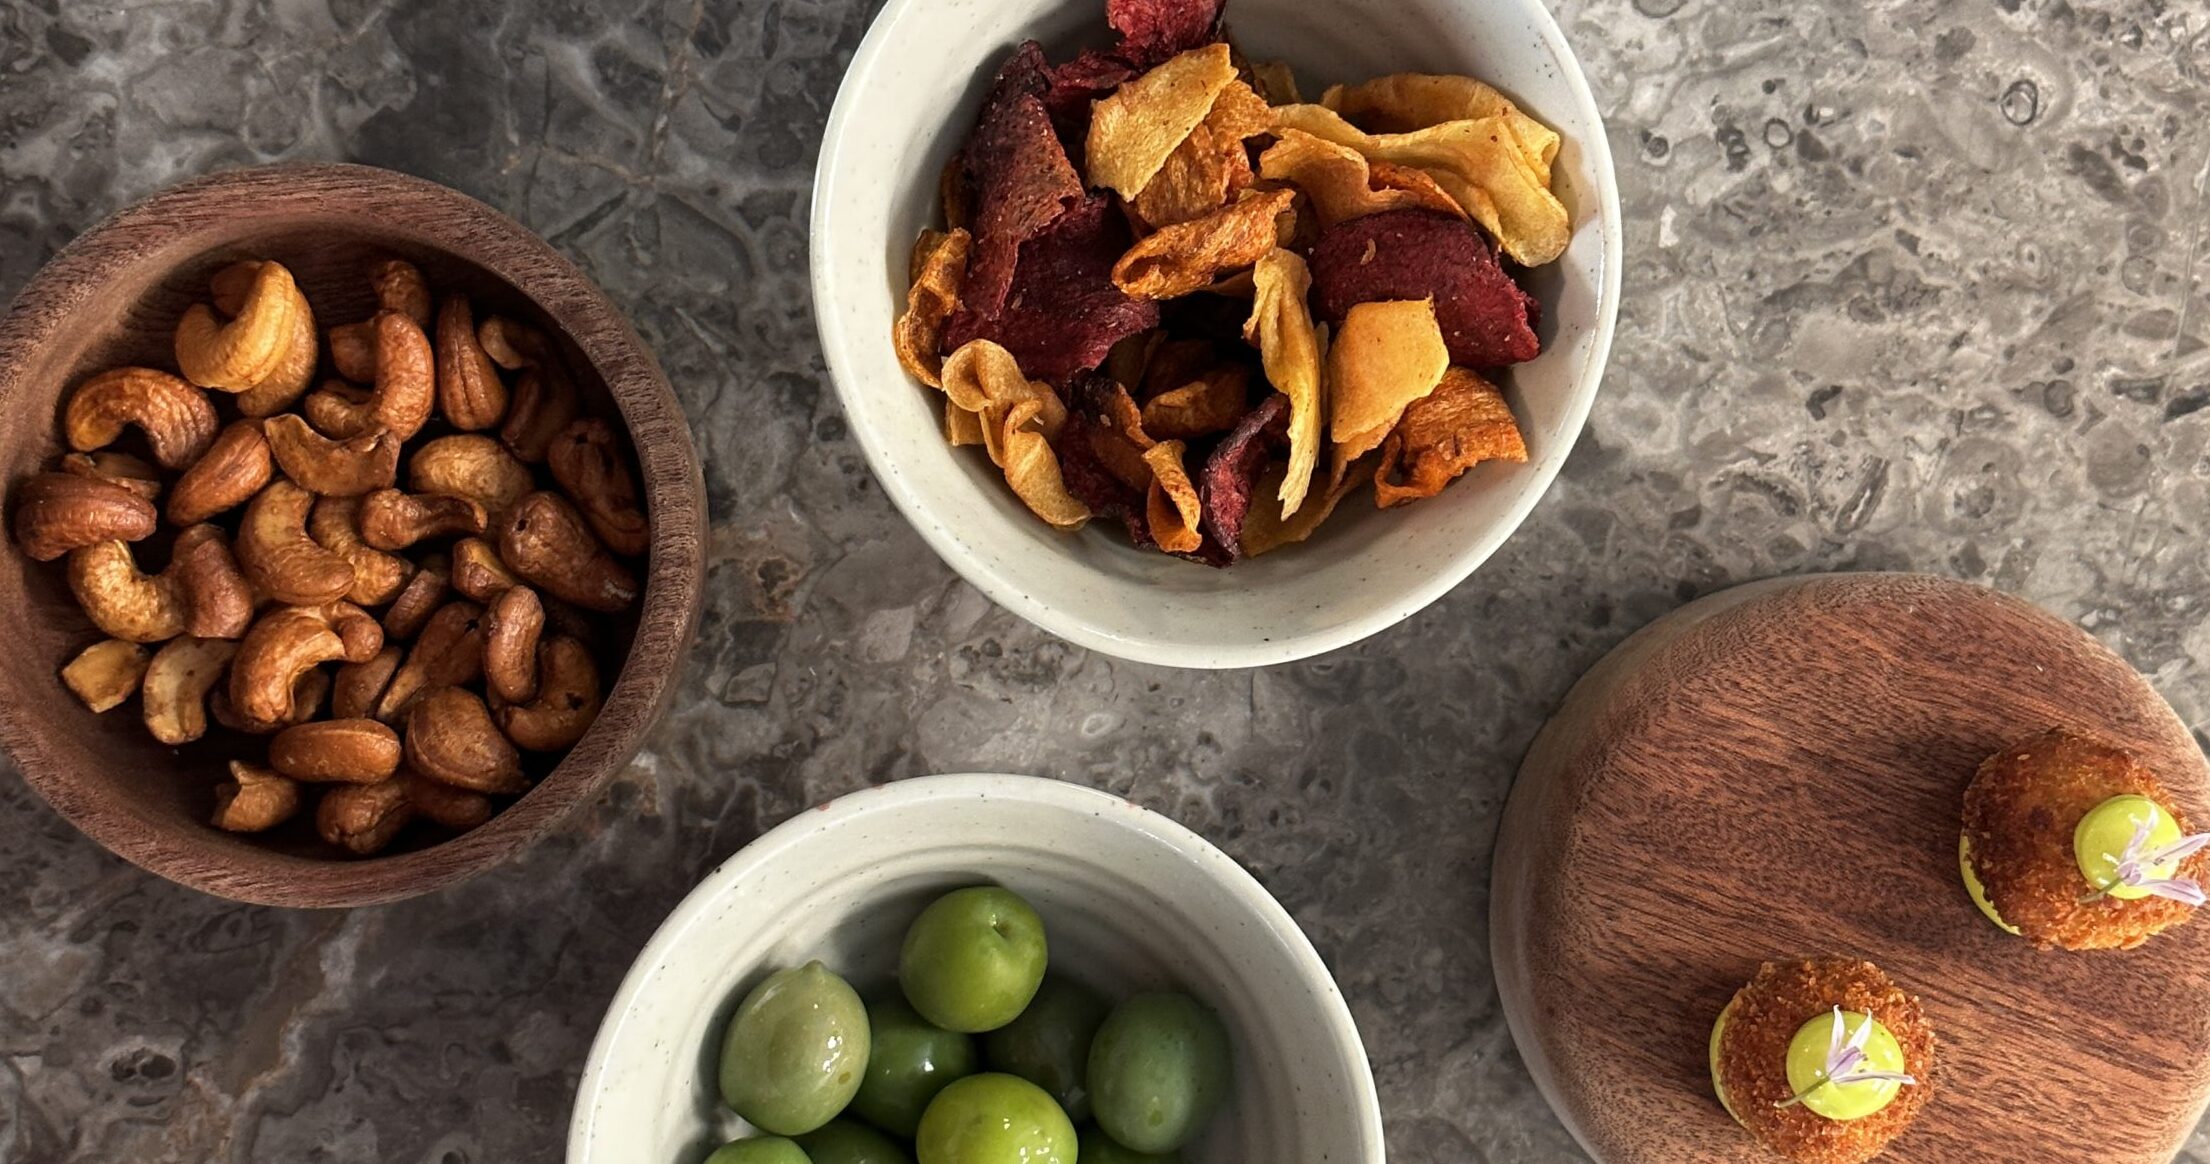 Fire skåle med snacks - soyaristede cashewnødder, rodfrugtechips, oliven og svinekugle